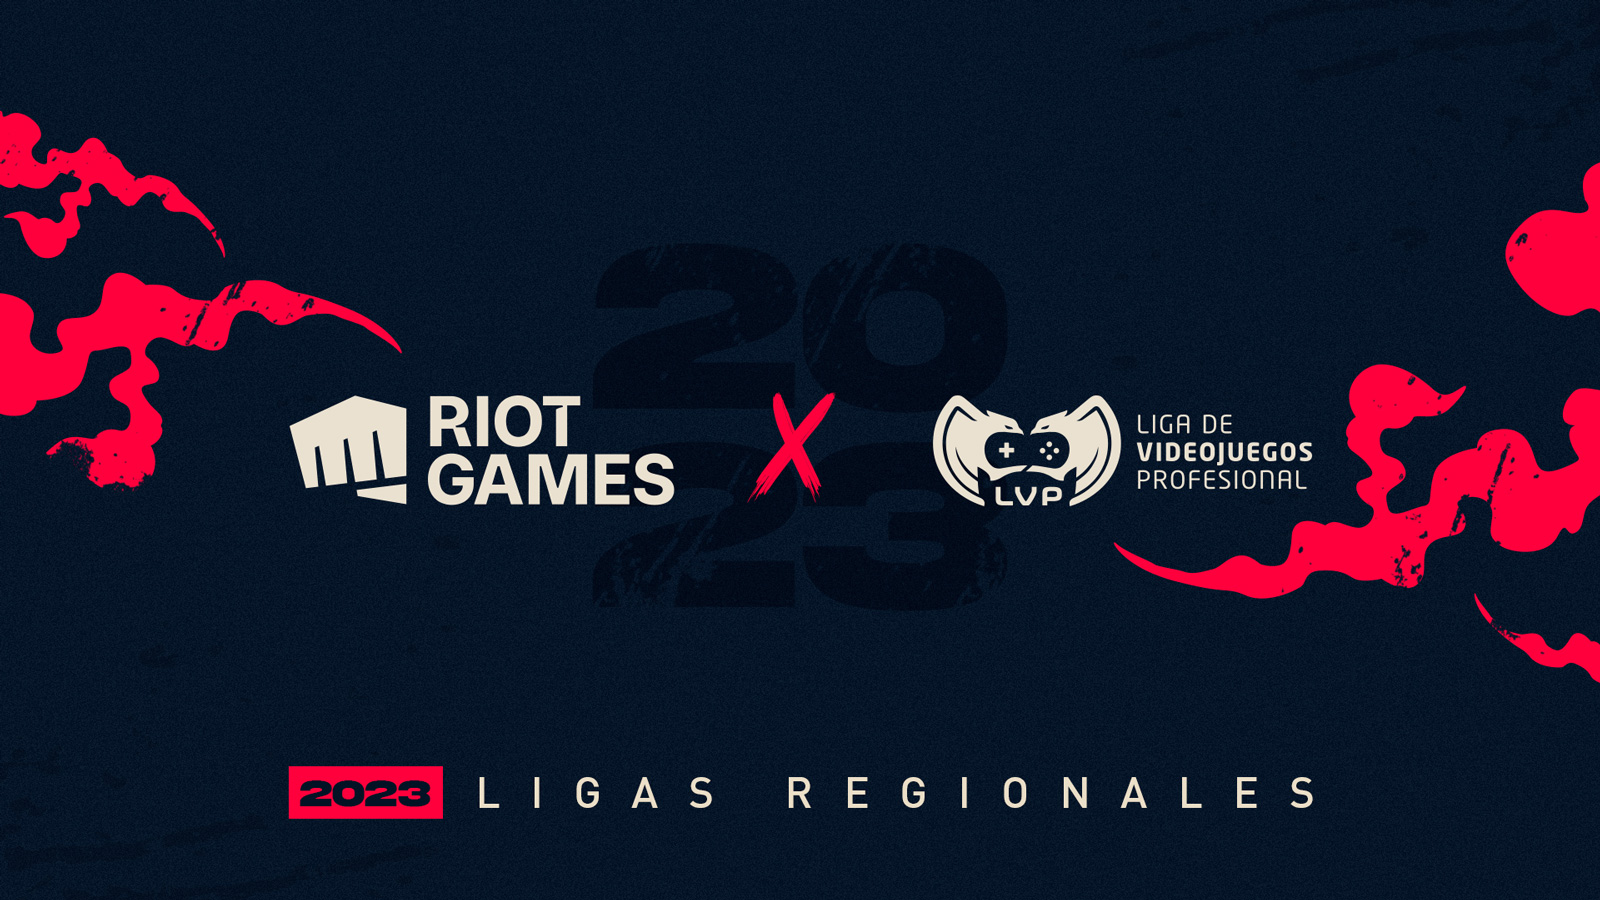 RIOT anuncia dos torneos Tier 2 en Latinoamérica